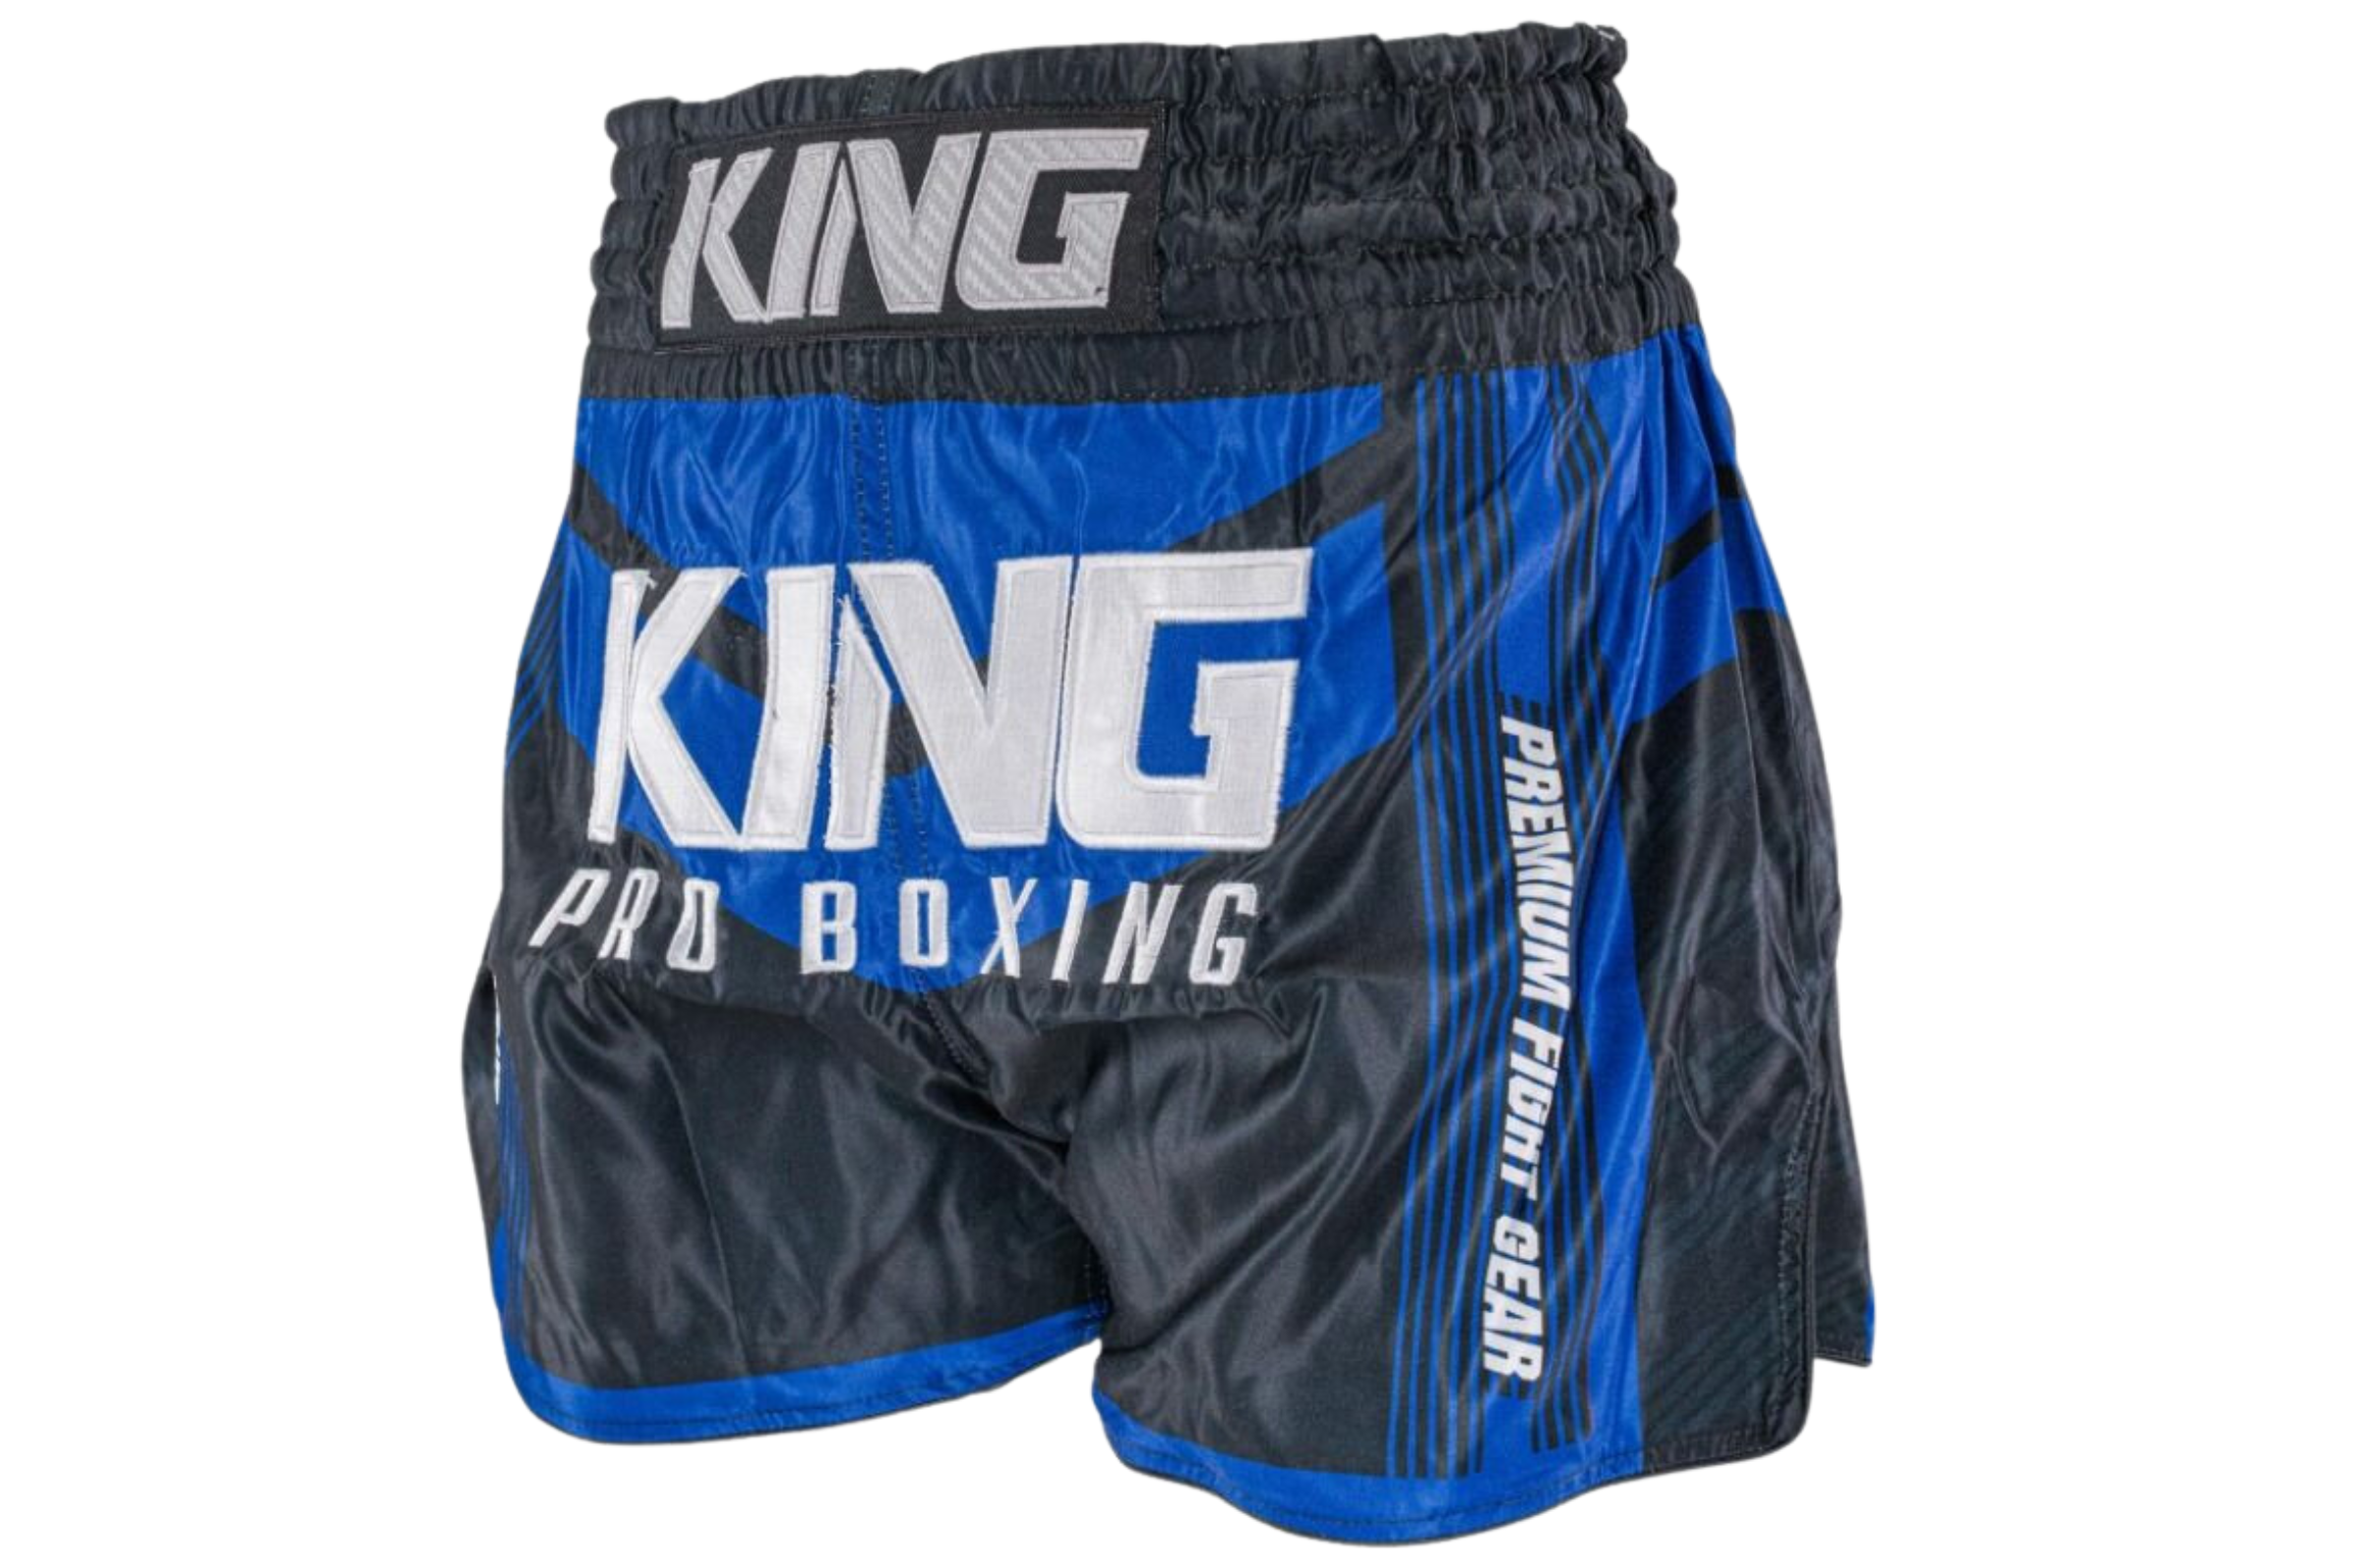 King Pro Boxing Vale Tudo Grappling Fight Shorts Blue/Black